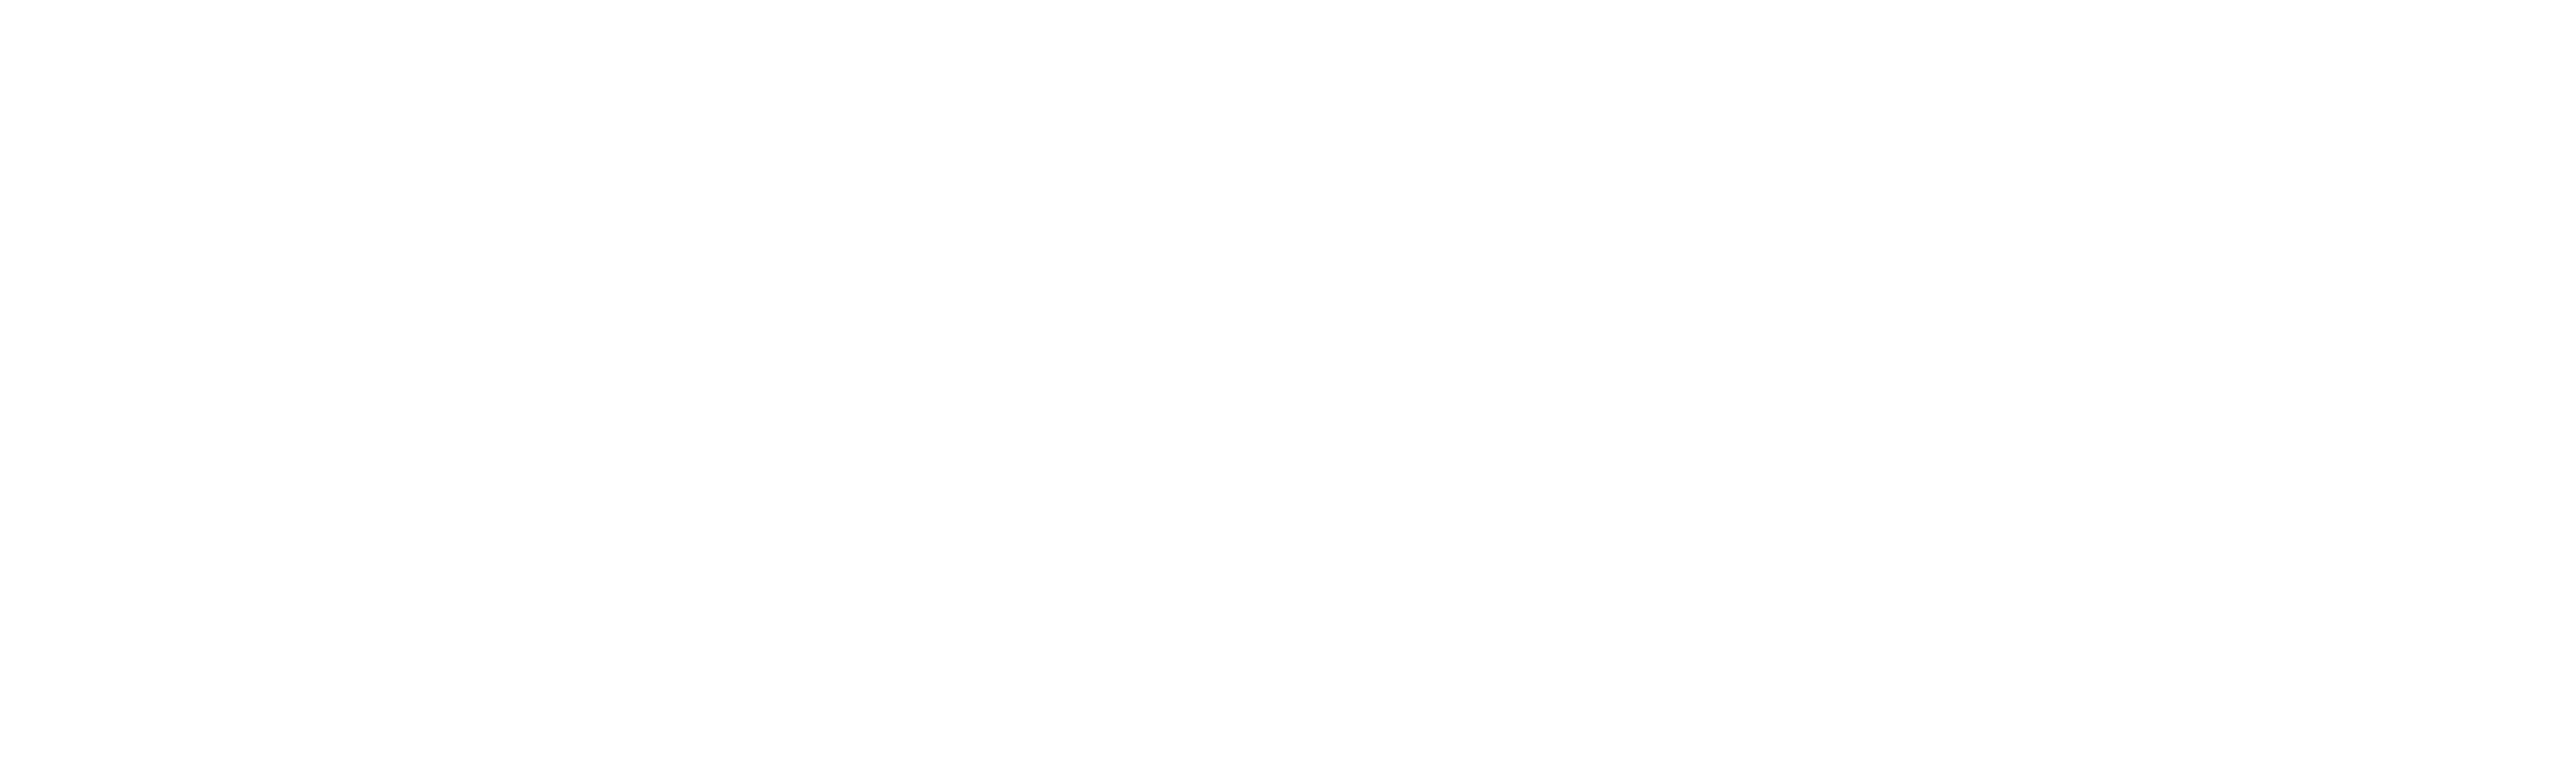 Berry Built and Design, Inc. Logo